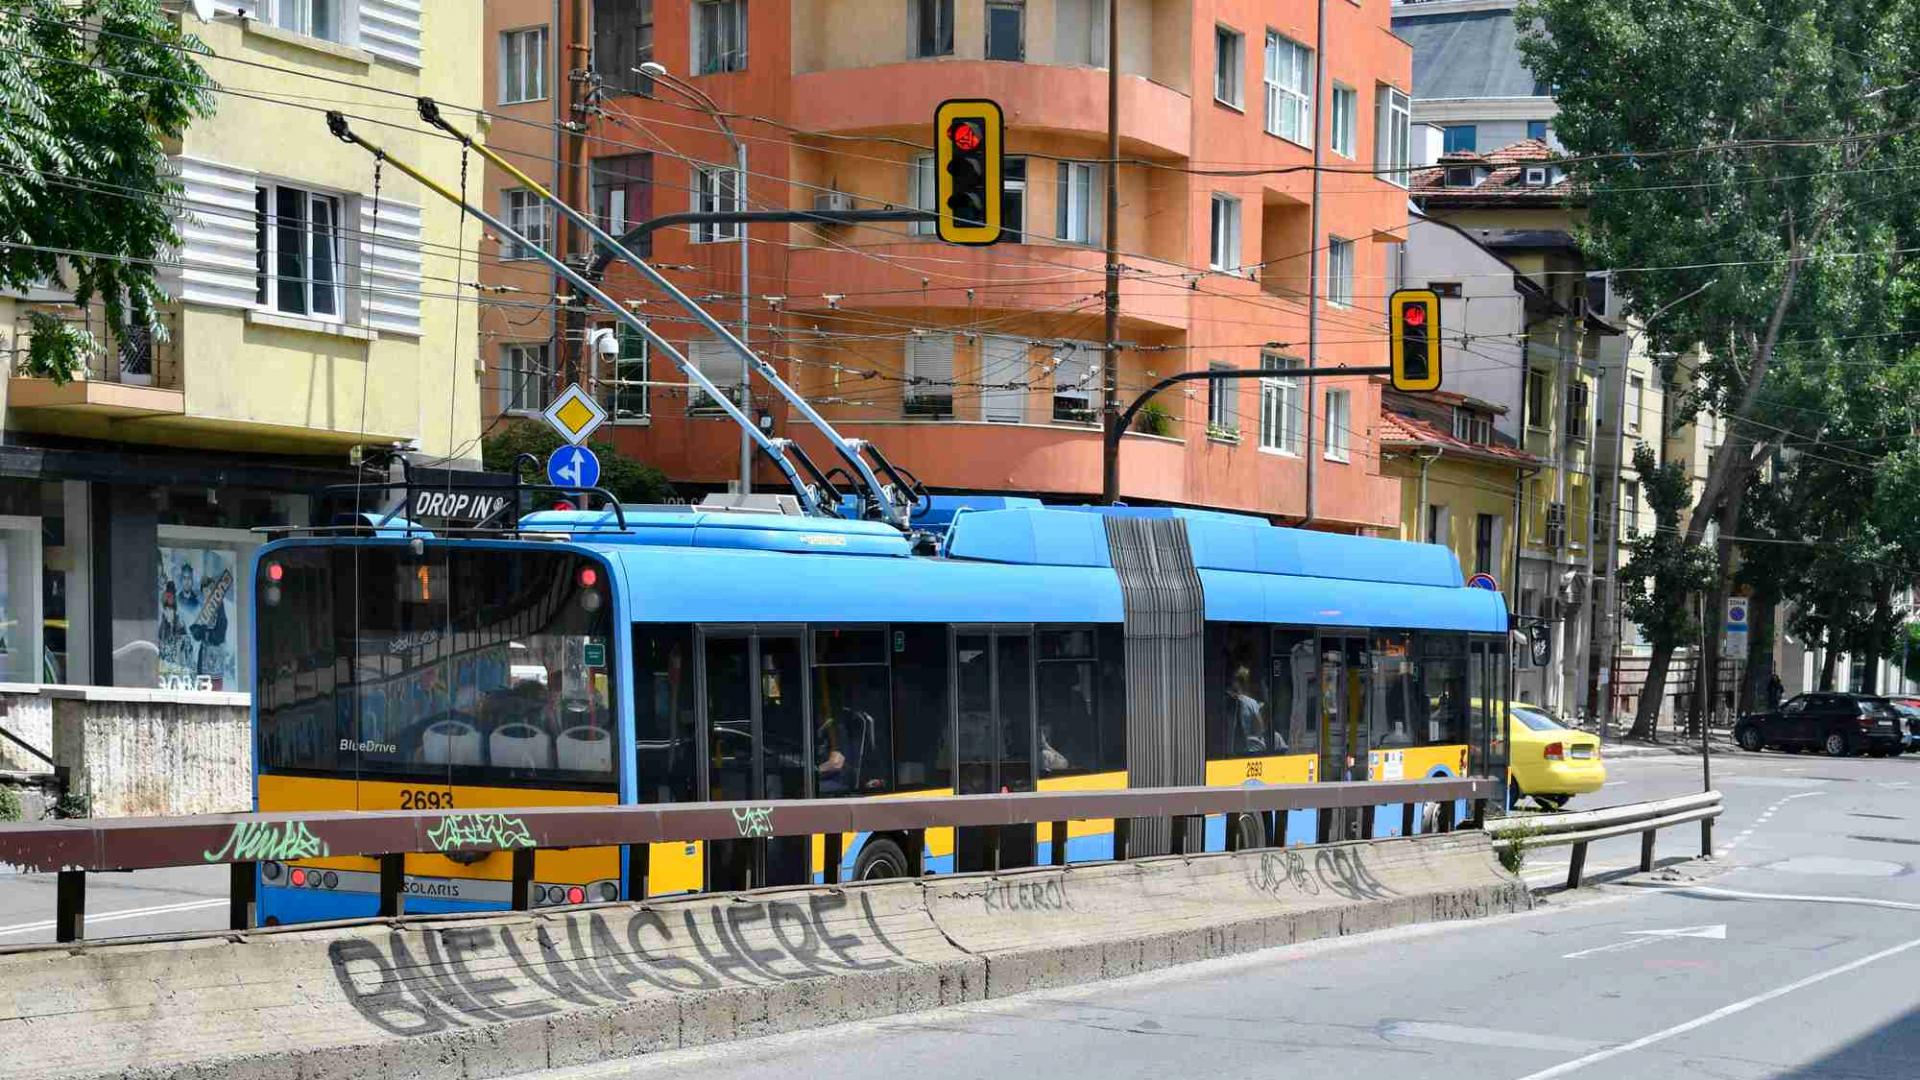 Pametni sustav na autobusima u Sofiji znat će, uz ostalo, čak i točne koordinate rupa na cesti